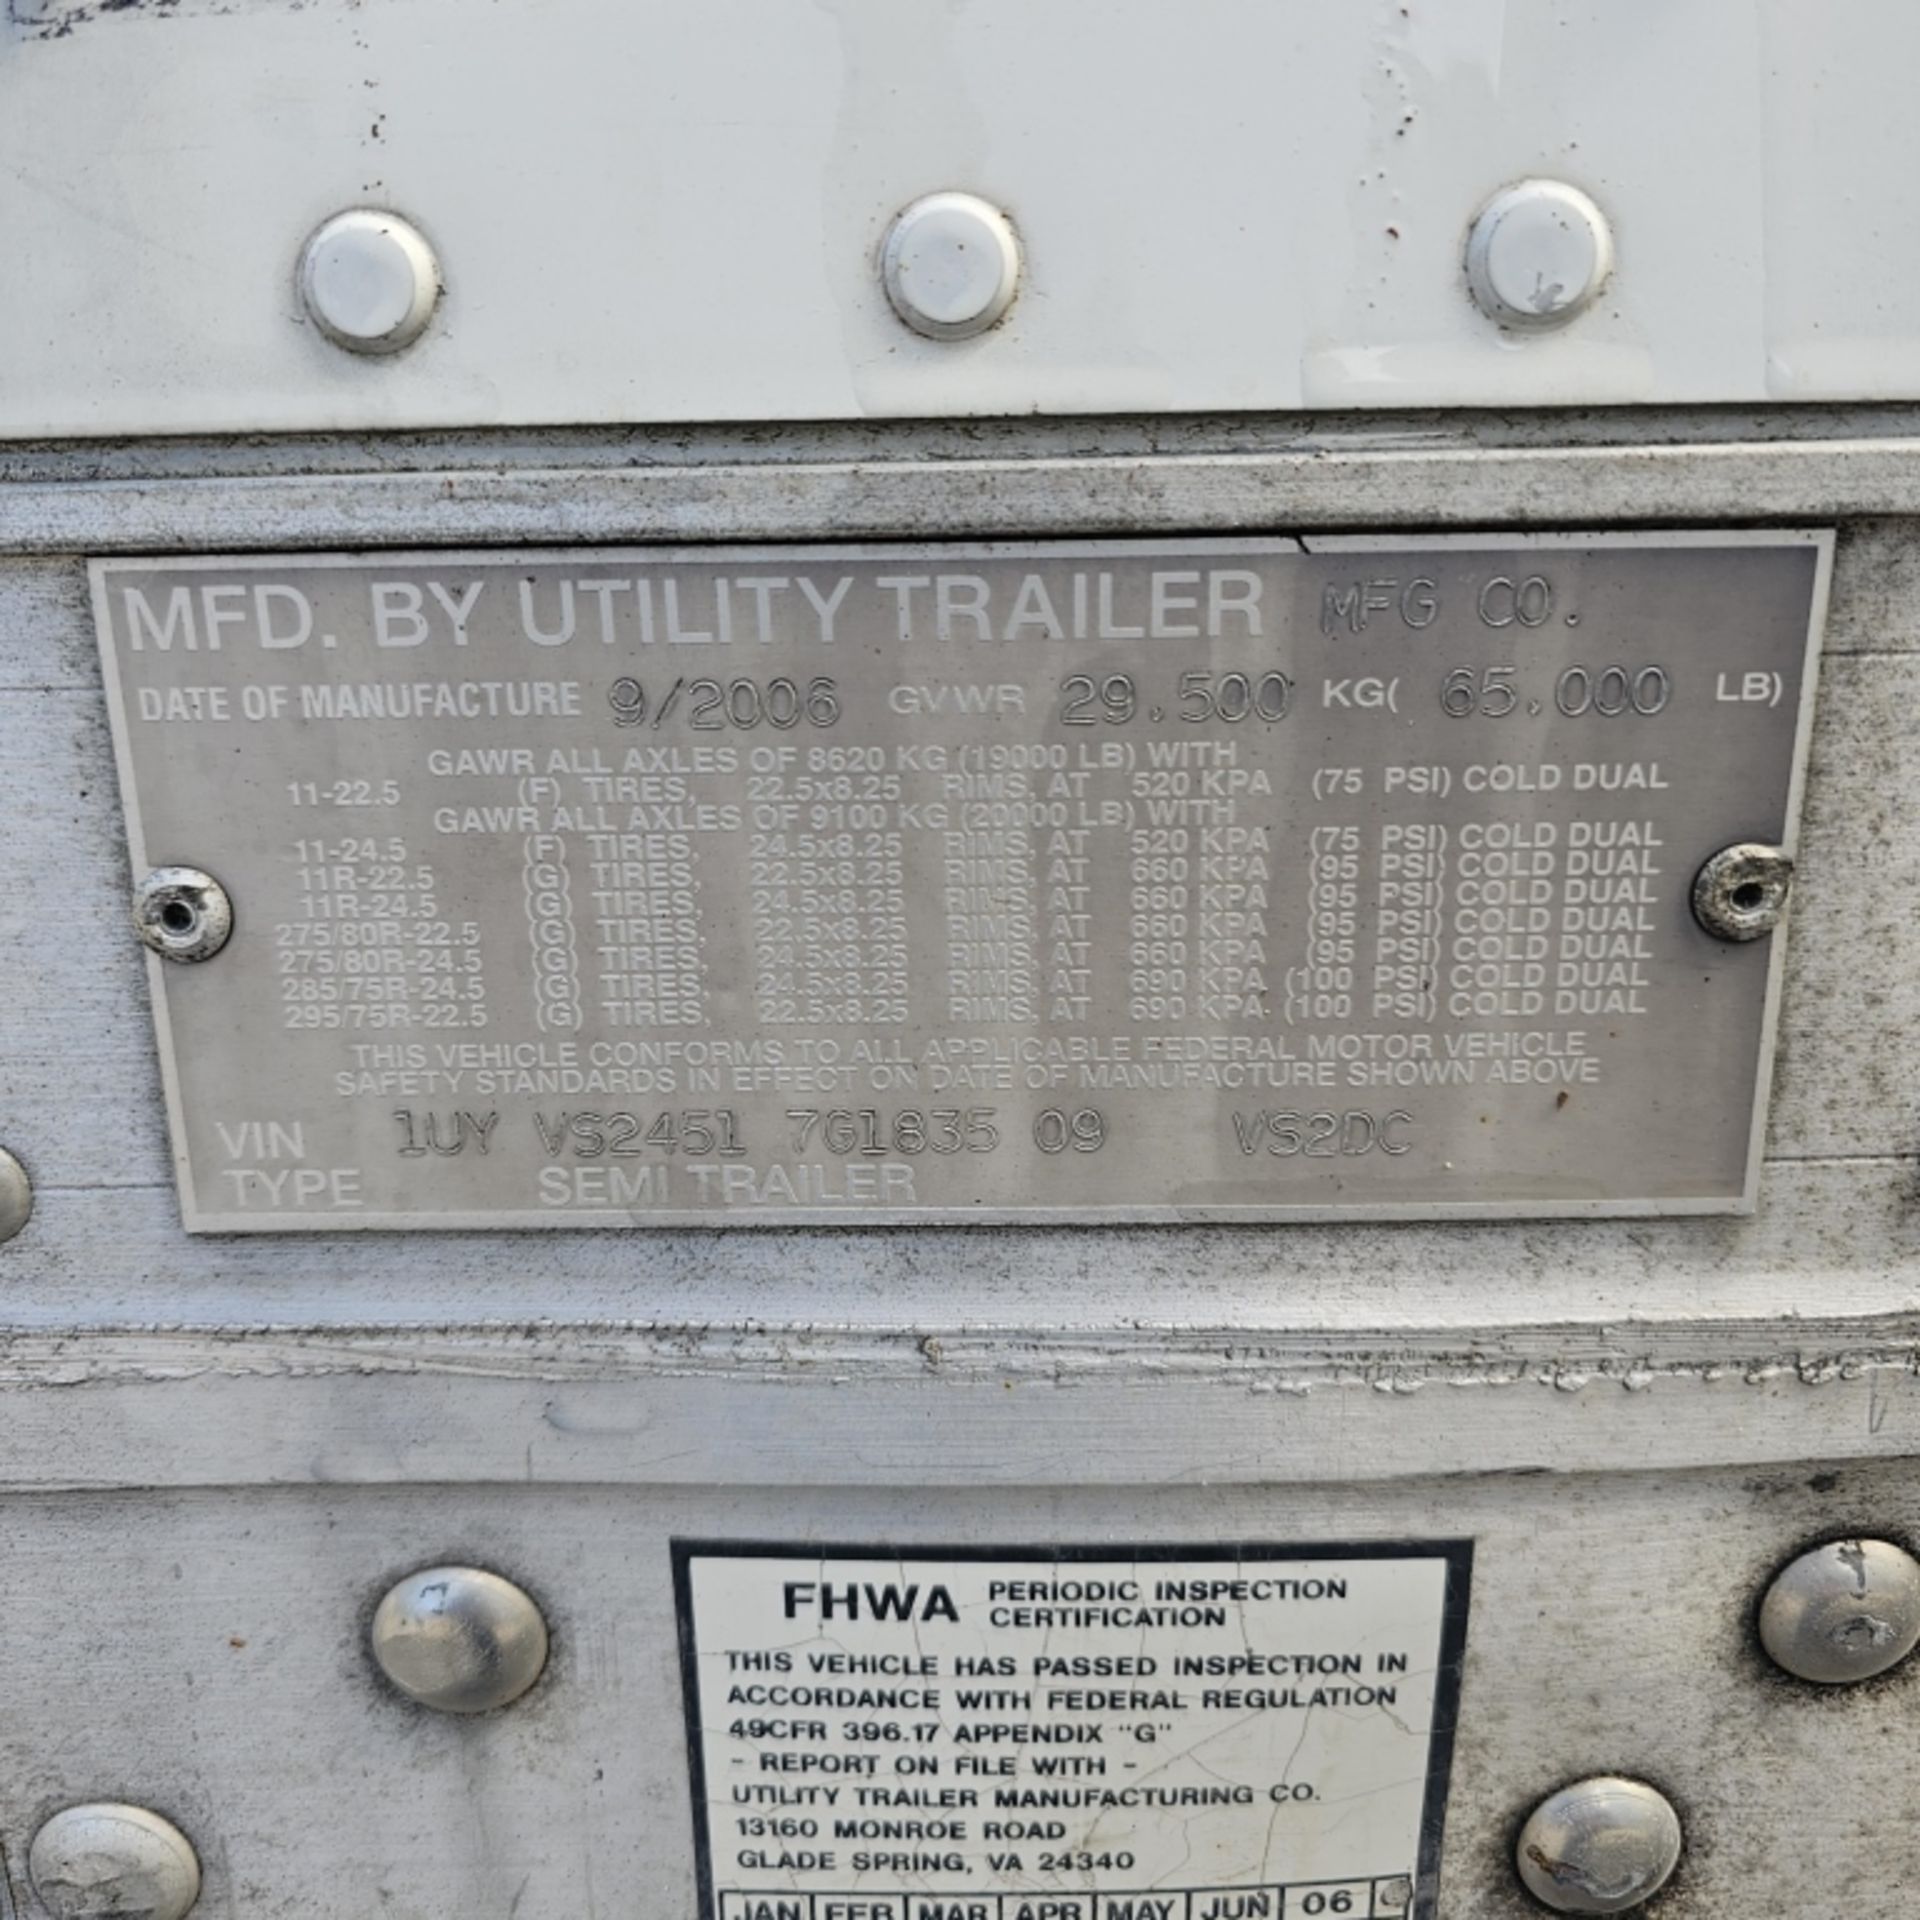 2007 Utility Dry Van Trailer - Image 5 of 5